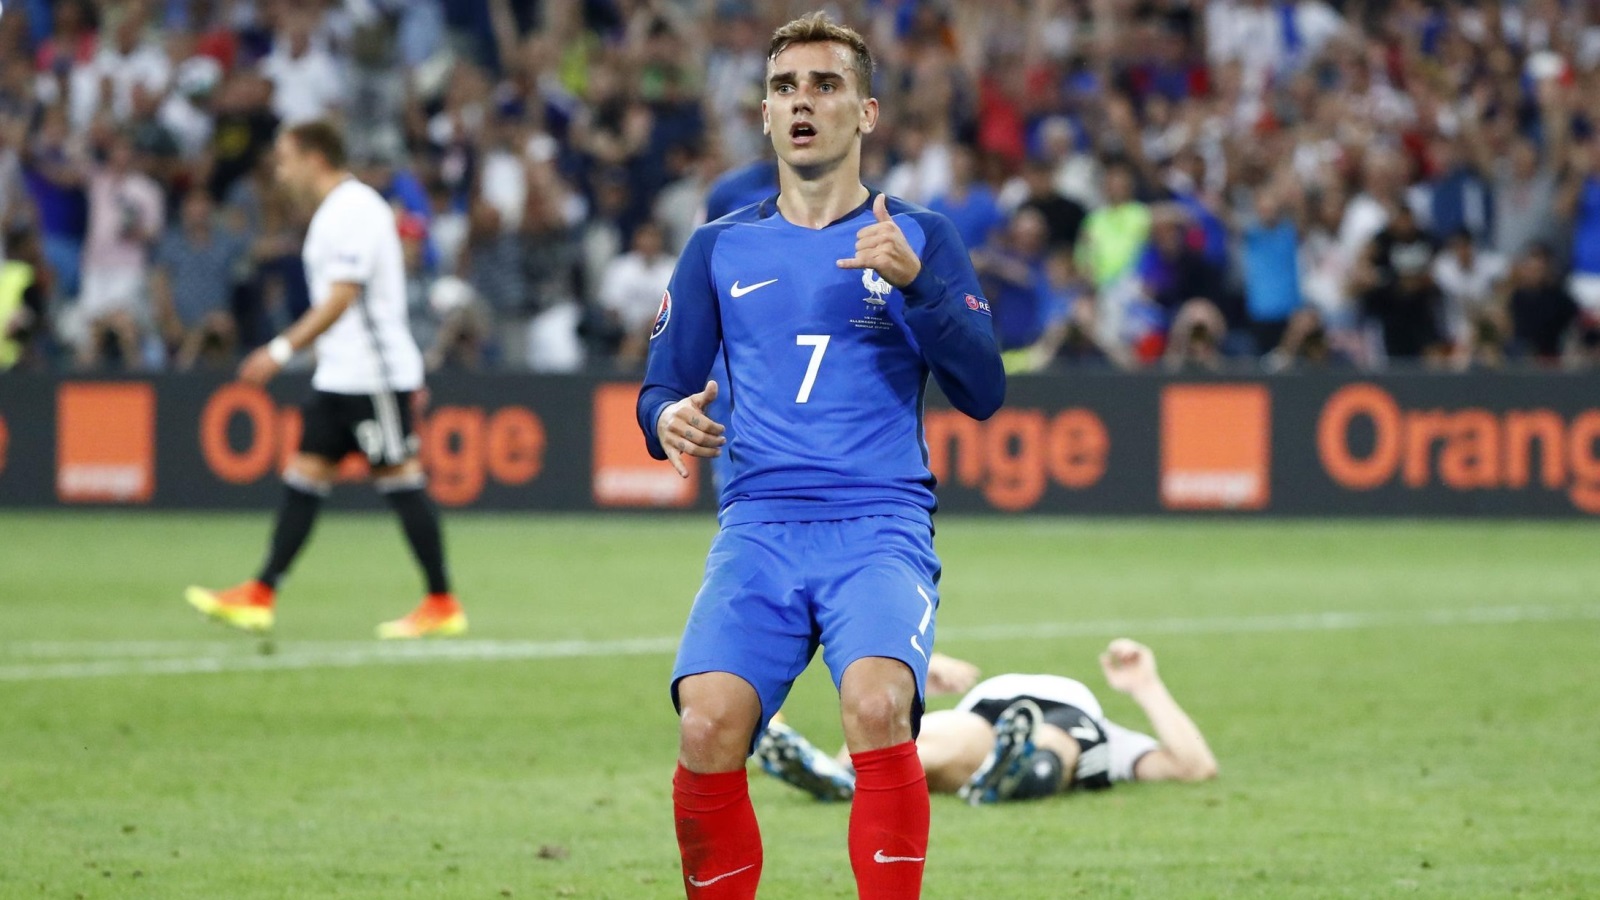 ‪غريزمان كان وراء تأهل فرنسا إلى النهائي بإحرازه هدفين في مرمى مانويل نوير‬ (رويترز)